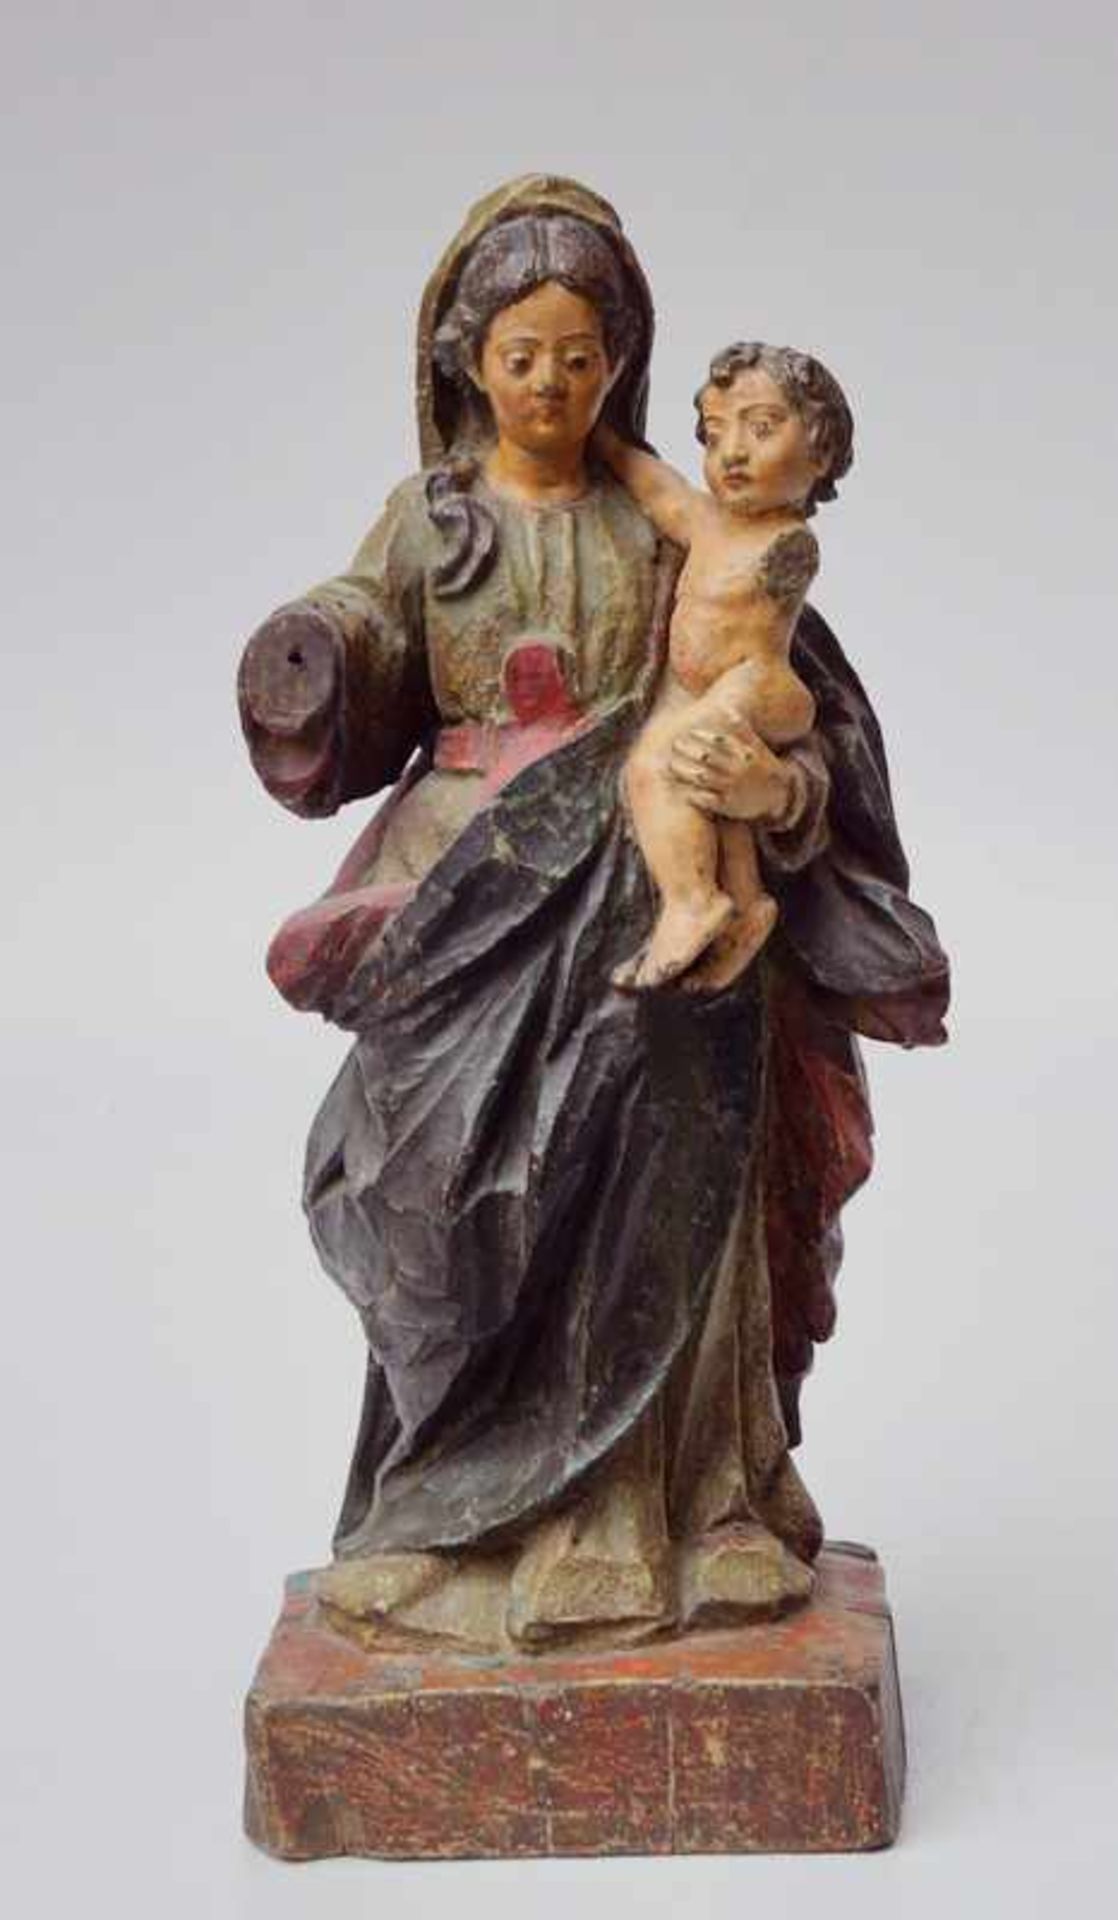 Stehende Maria mit Christuskind,18. Jhd., Koloniales Südamerika